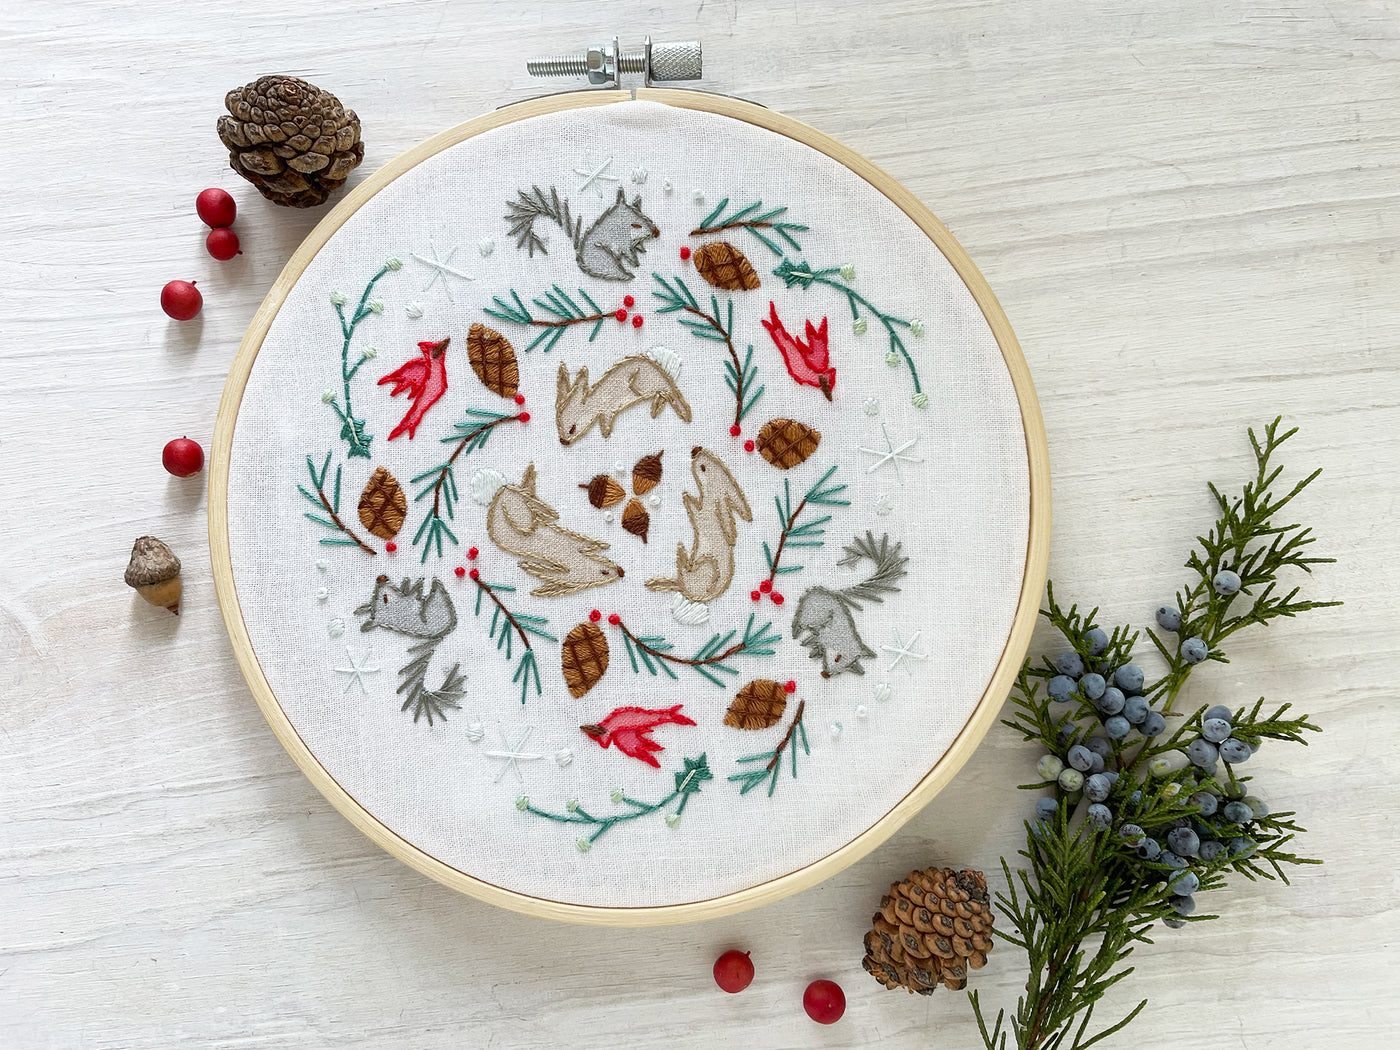 Winter Woodland Mandala PDF Hand Embroidery pattern